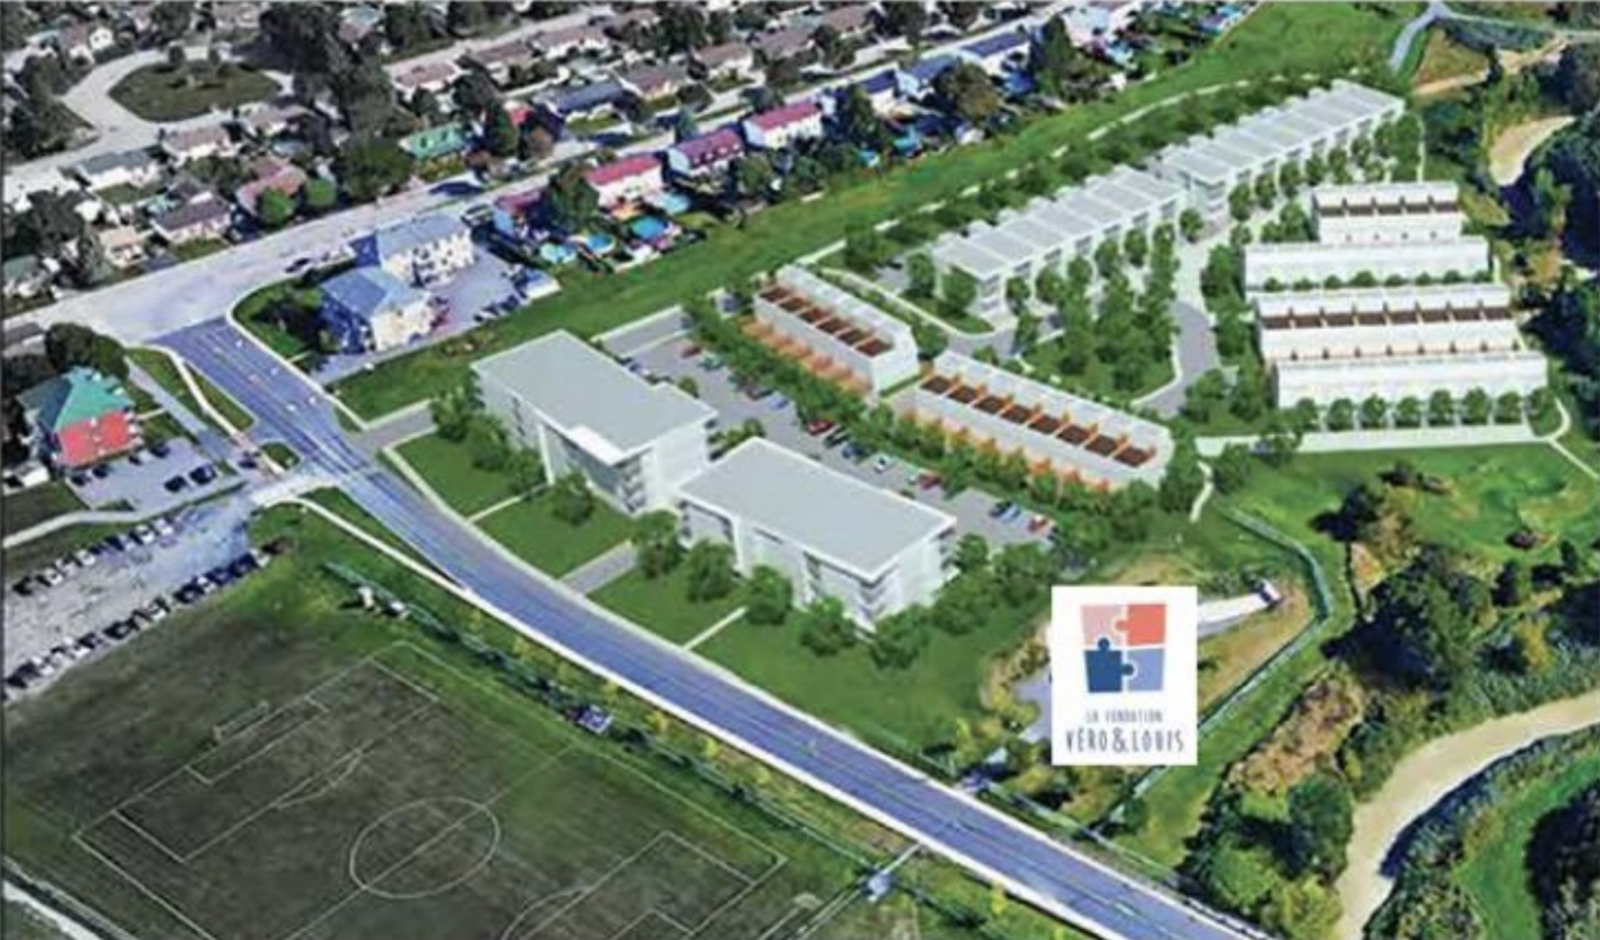 La construction d’un quartier TOD dans le parc Saint-Charles à Varennes inquiète des citoyens